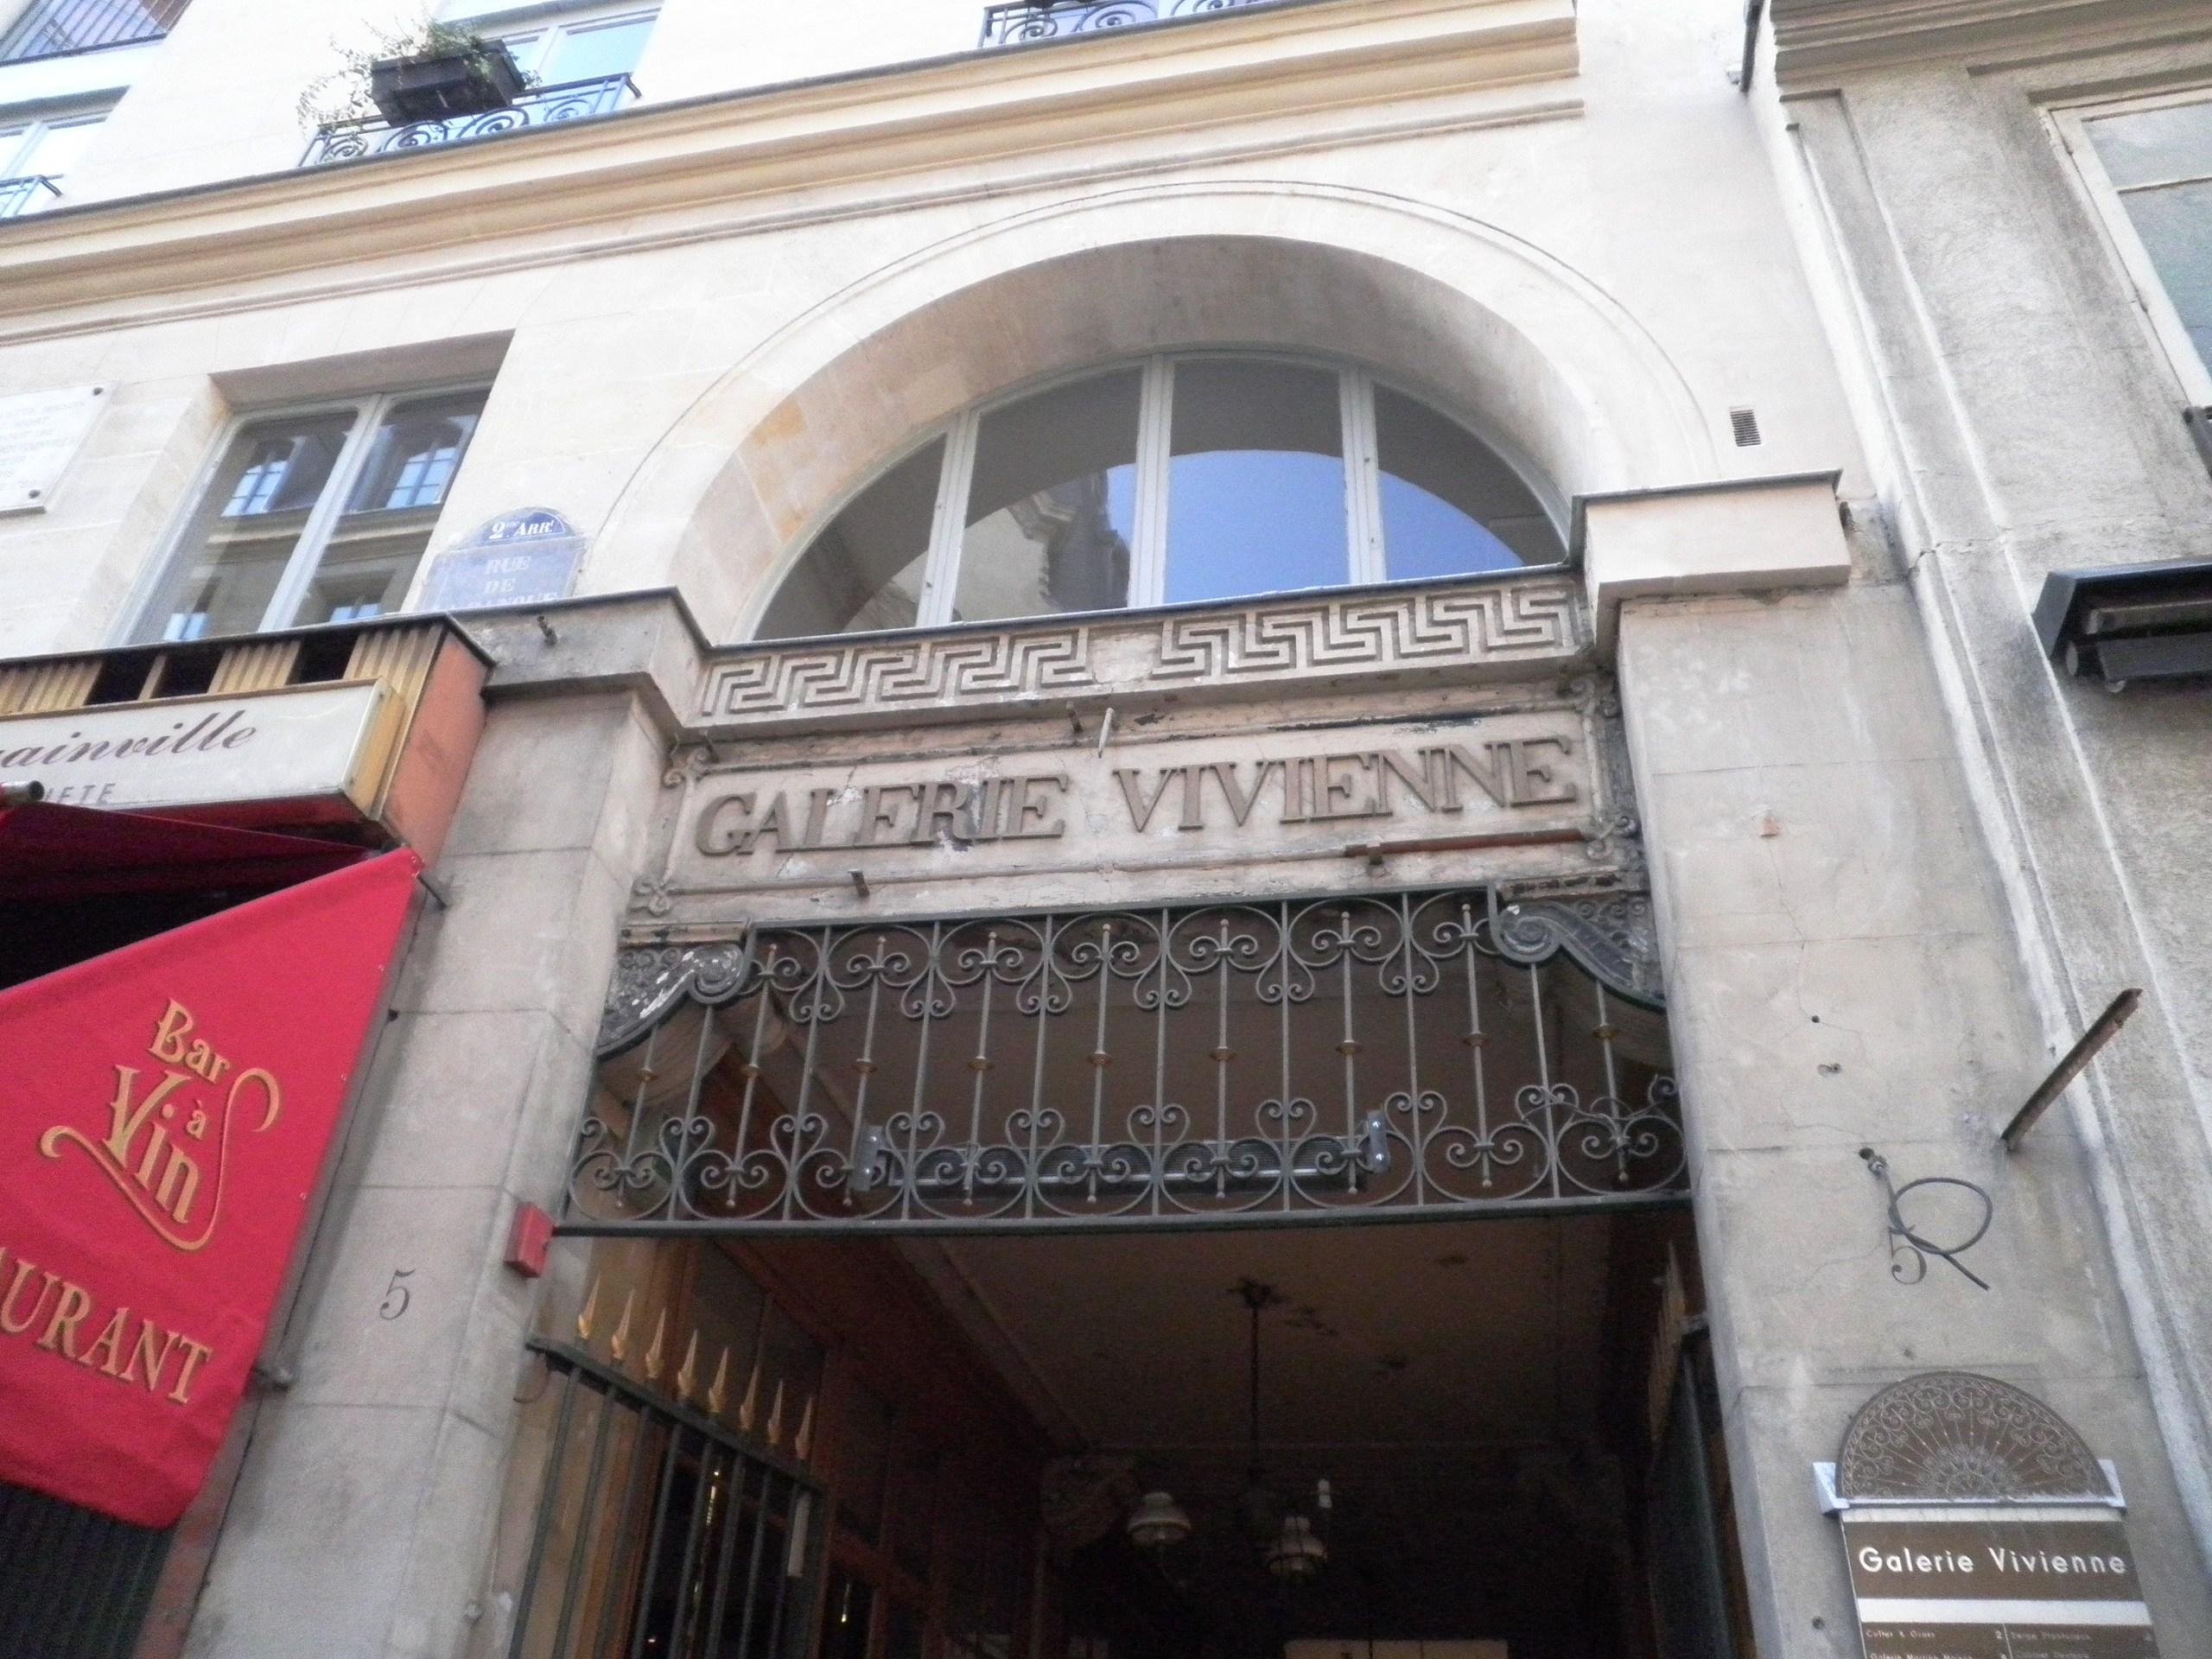 Galerie Vivienne : boutiques et restaurants